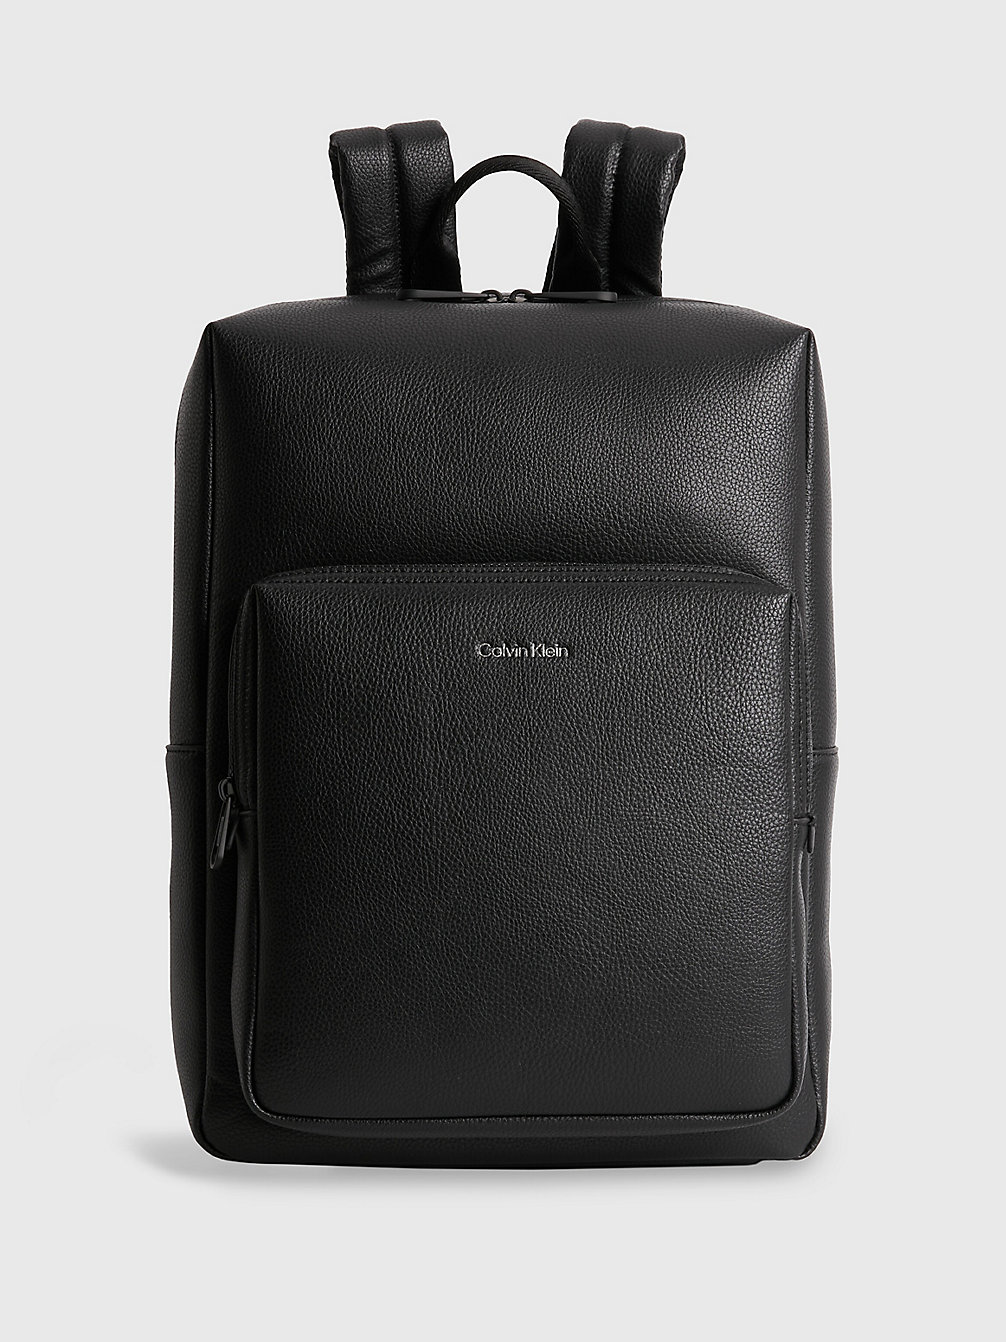 Men's Backpacks | Black & Leather Rucksacks | Calvin Klein®